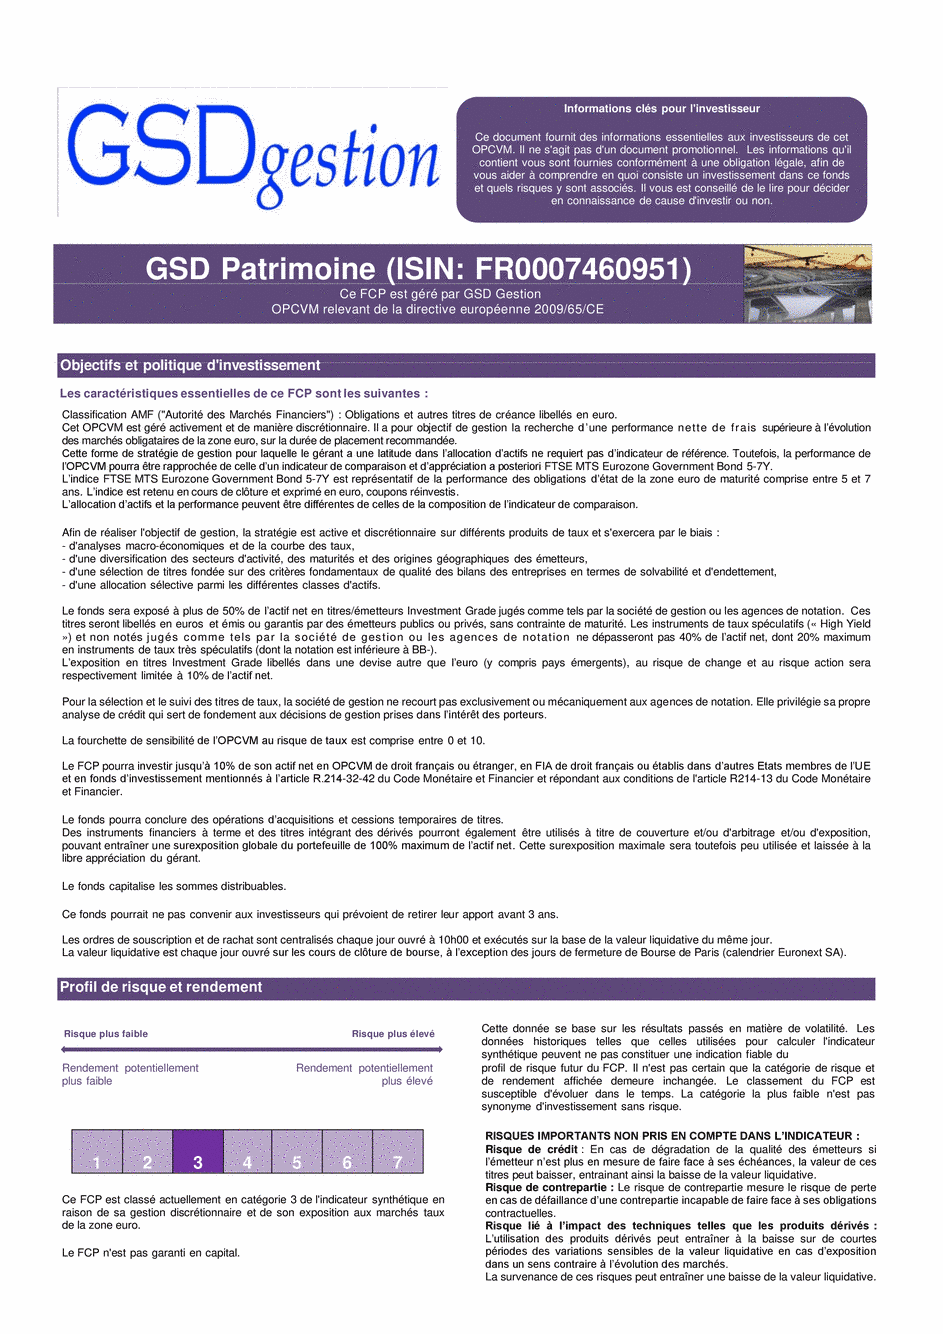 DICI-prospectus Complet GSD Patrimoine - 15/04/2021 - Français